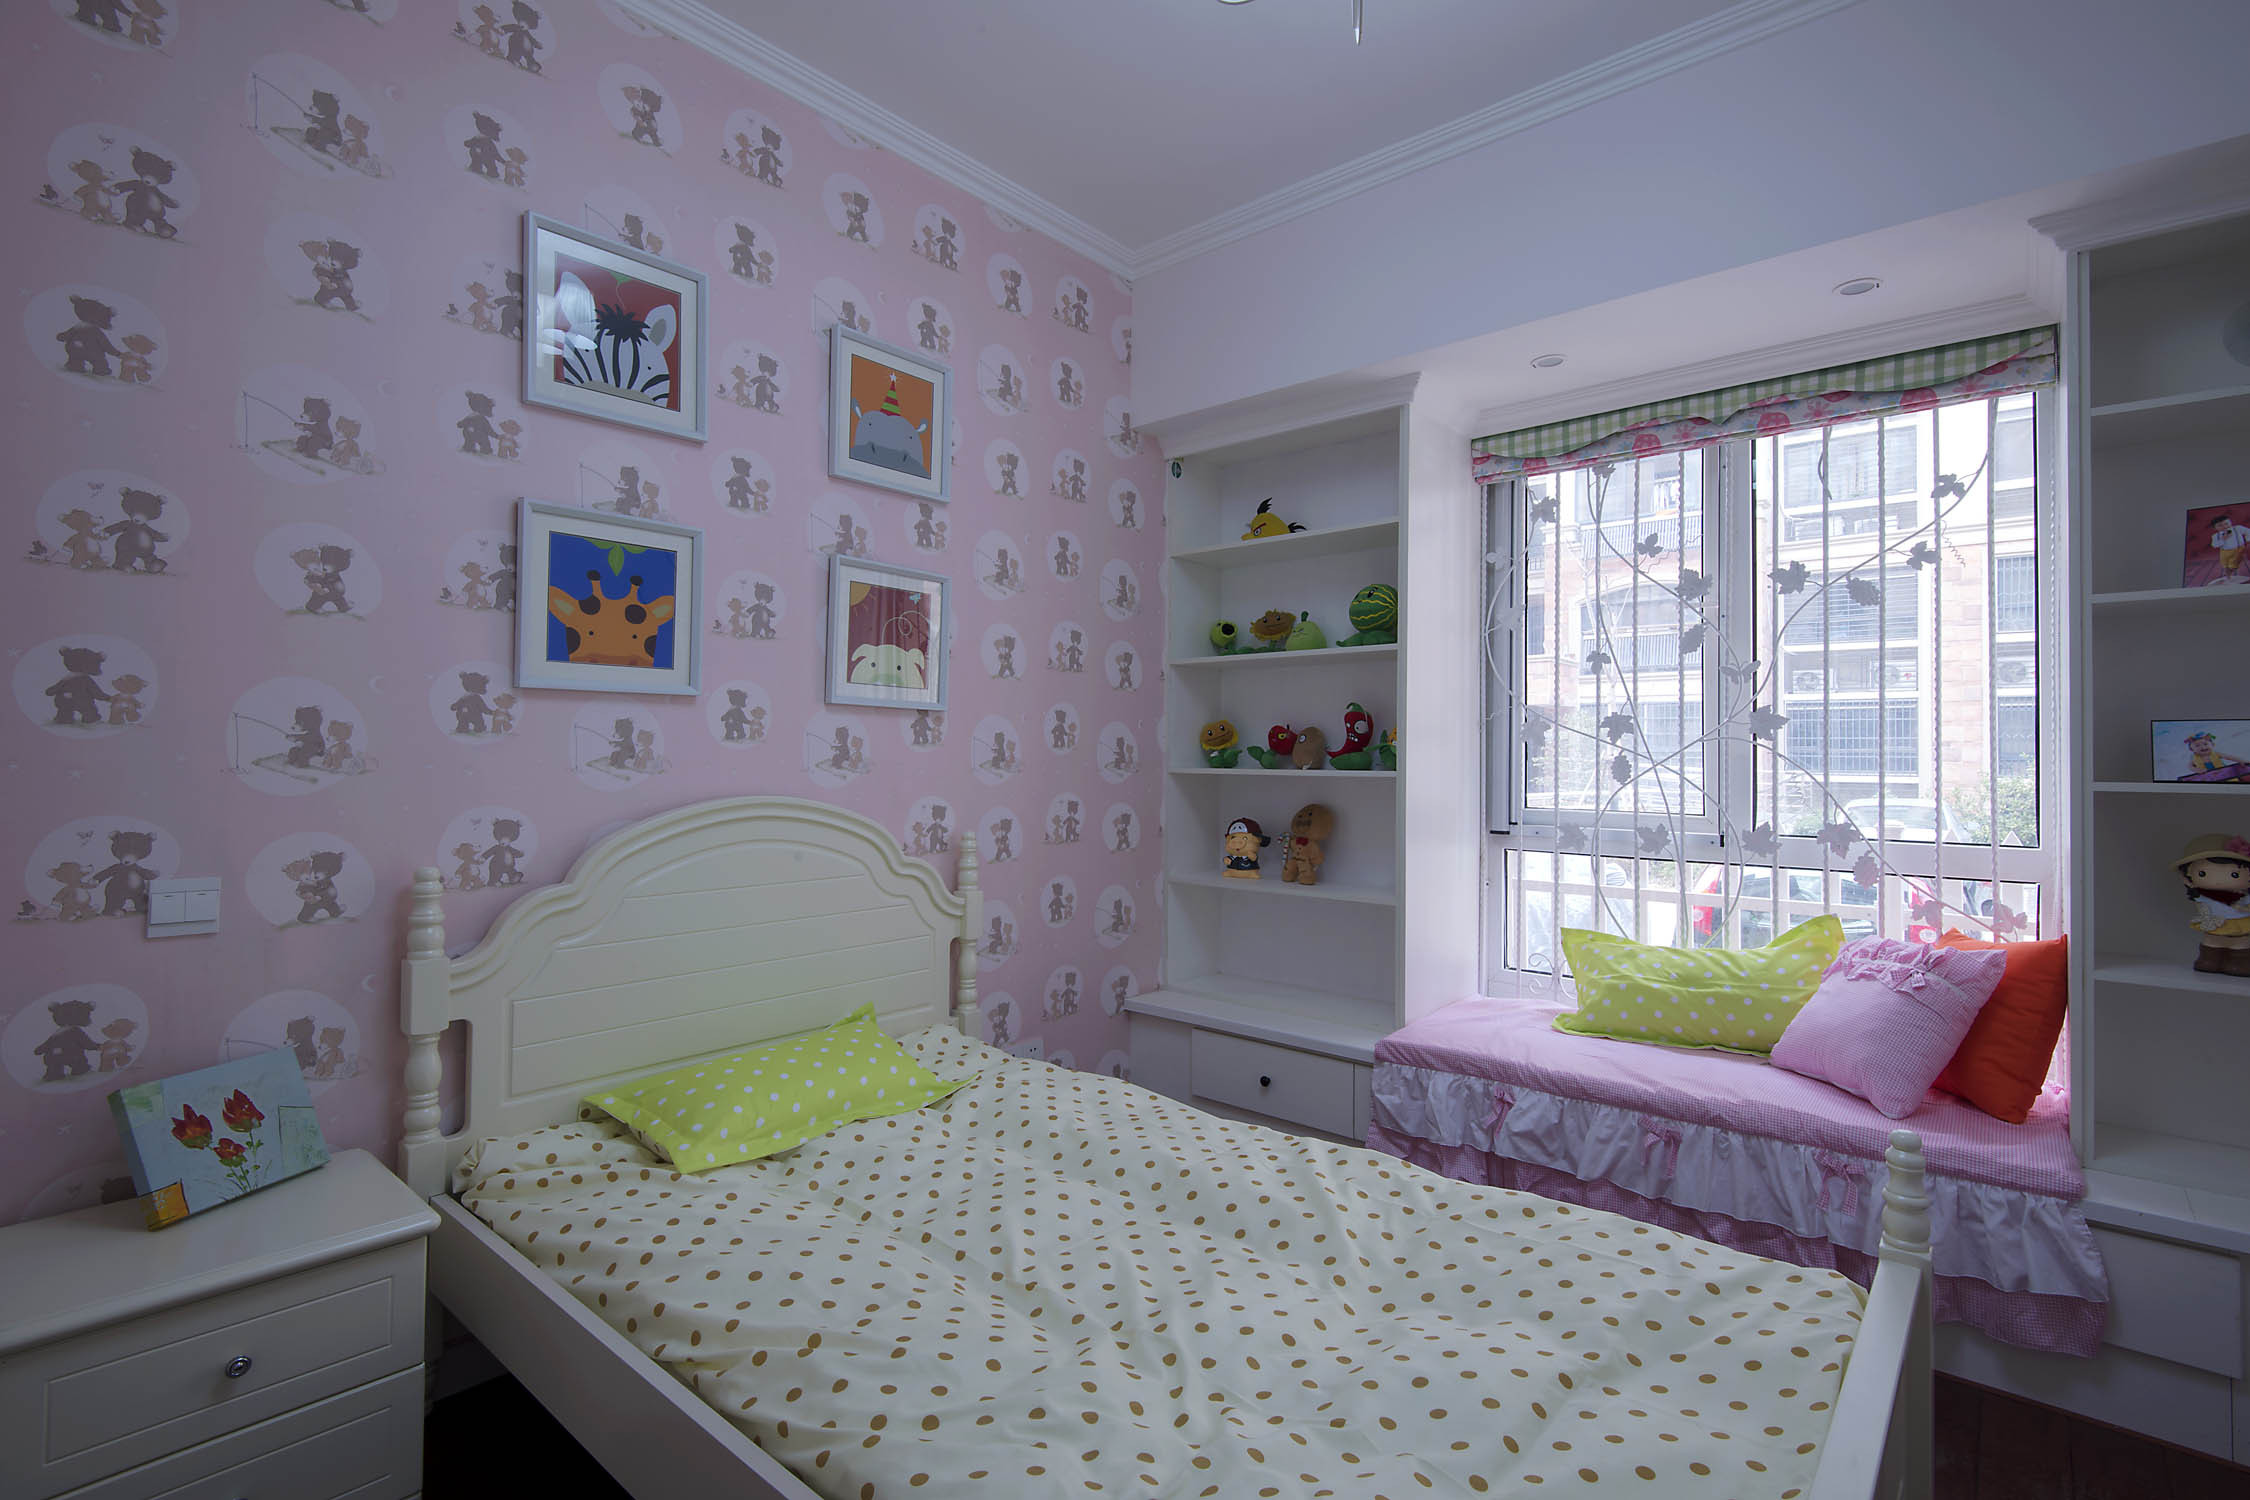 三居室装修,15-20万装修,140平米以上装修,儿童房,壁纸,飘窗,卧室背景墙,粉色,混搭风格